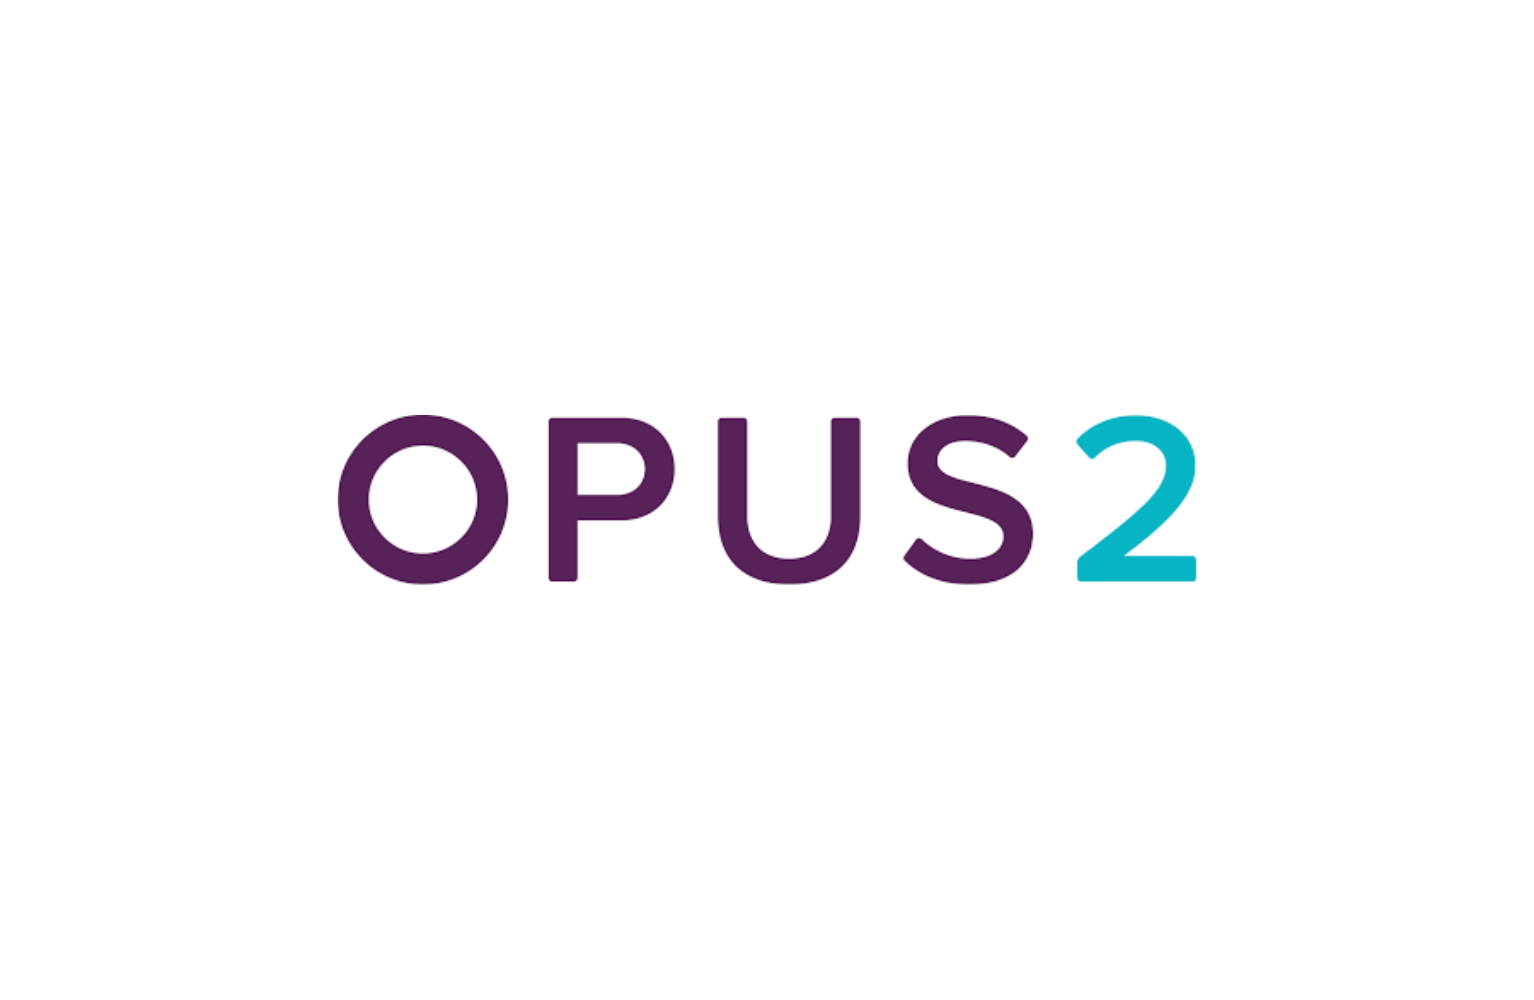 Opus2